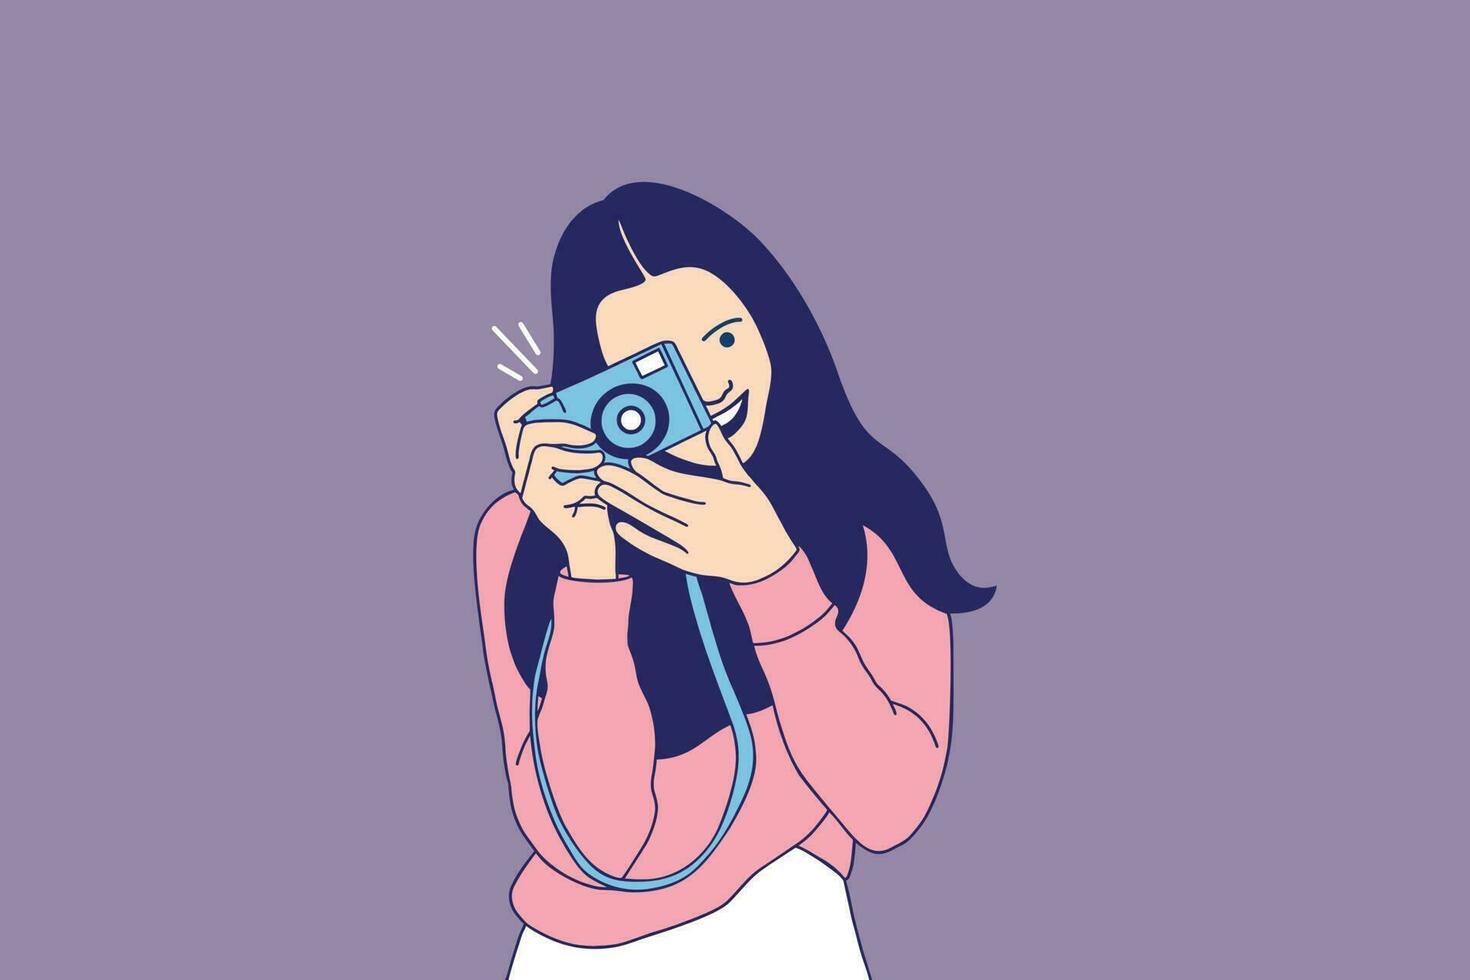 ilustrações linda mulher sorridente tirando fotos na câmera vetor